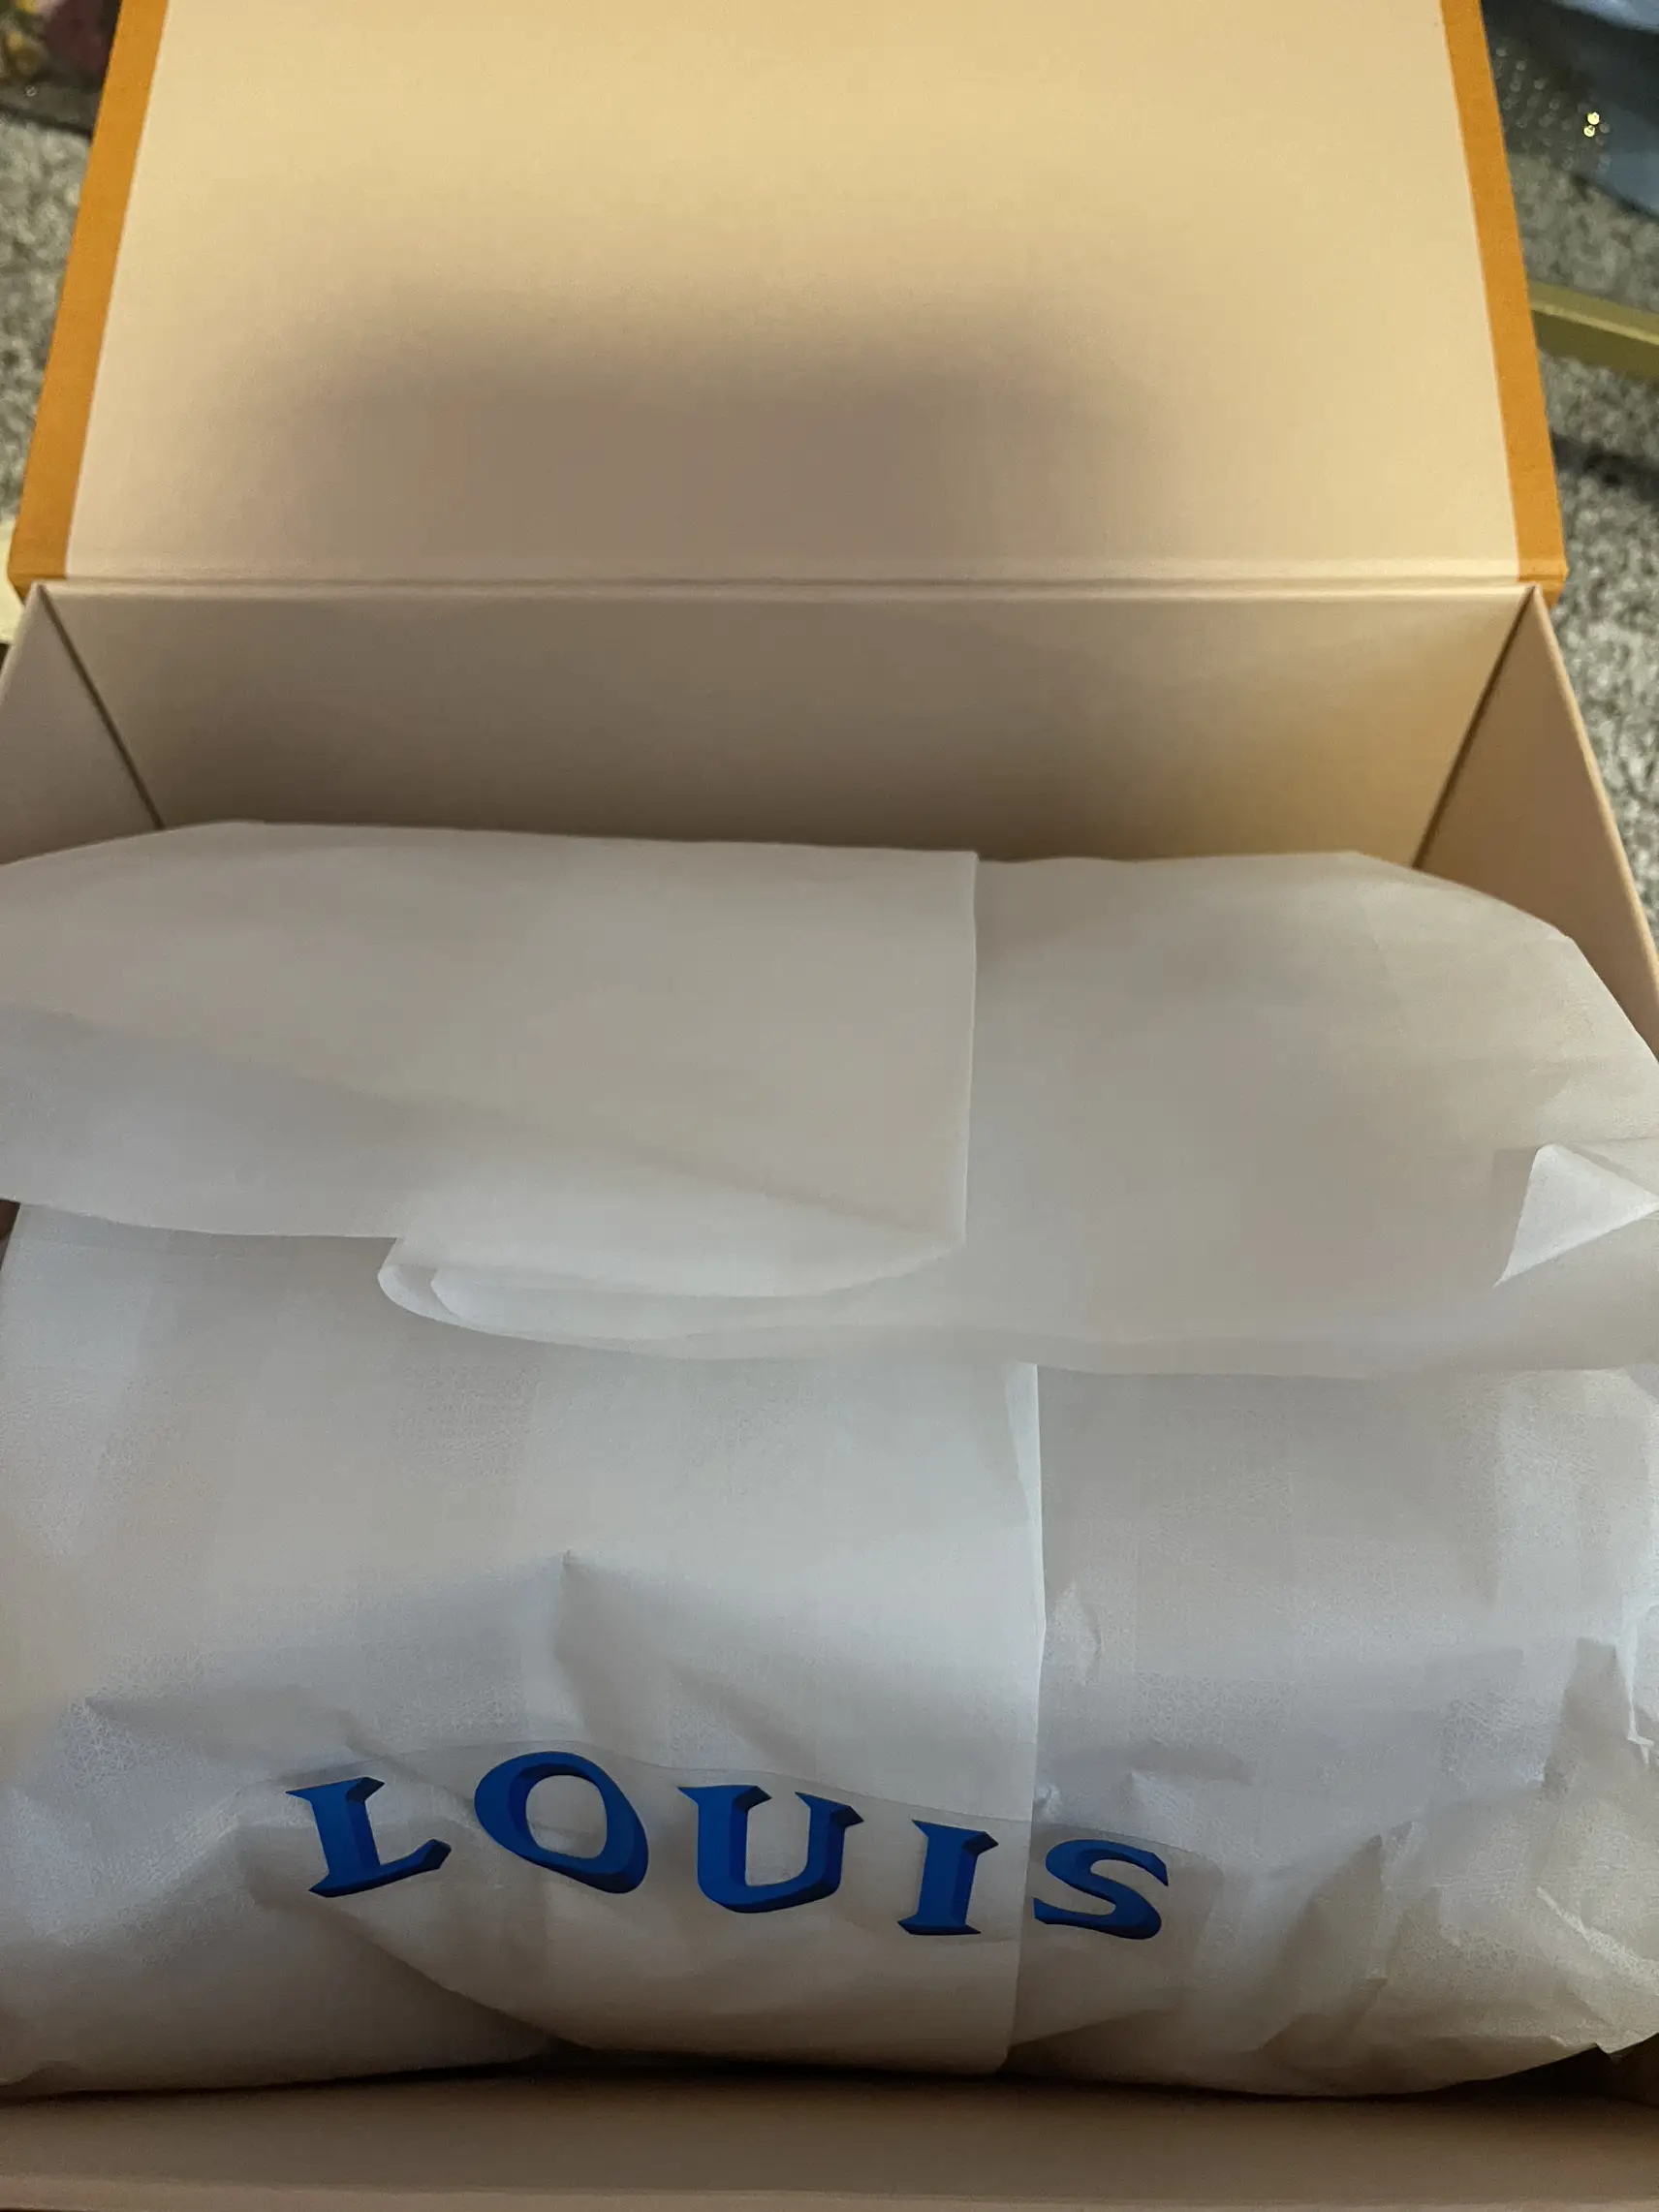 Louis Vuitton Unboxing Part 2. #louisvuitton #louisvuittonbag